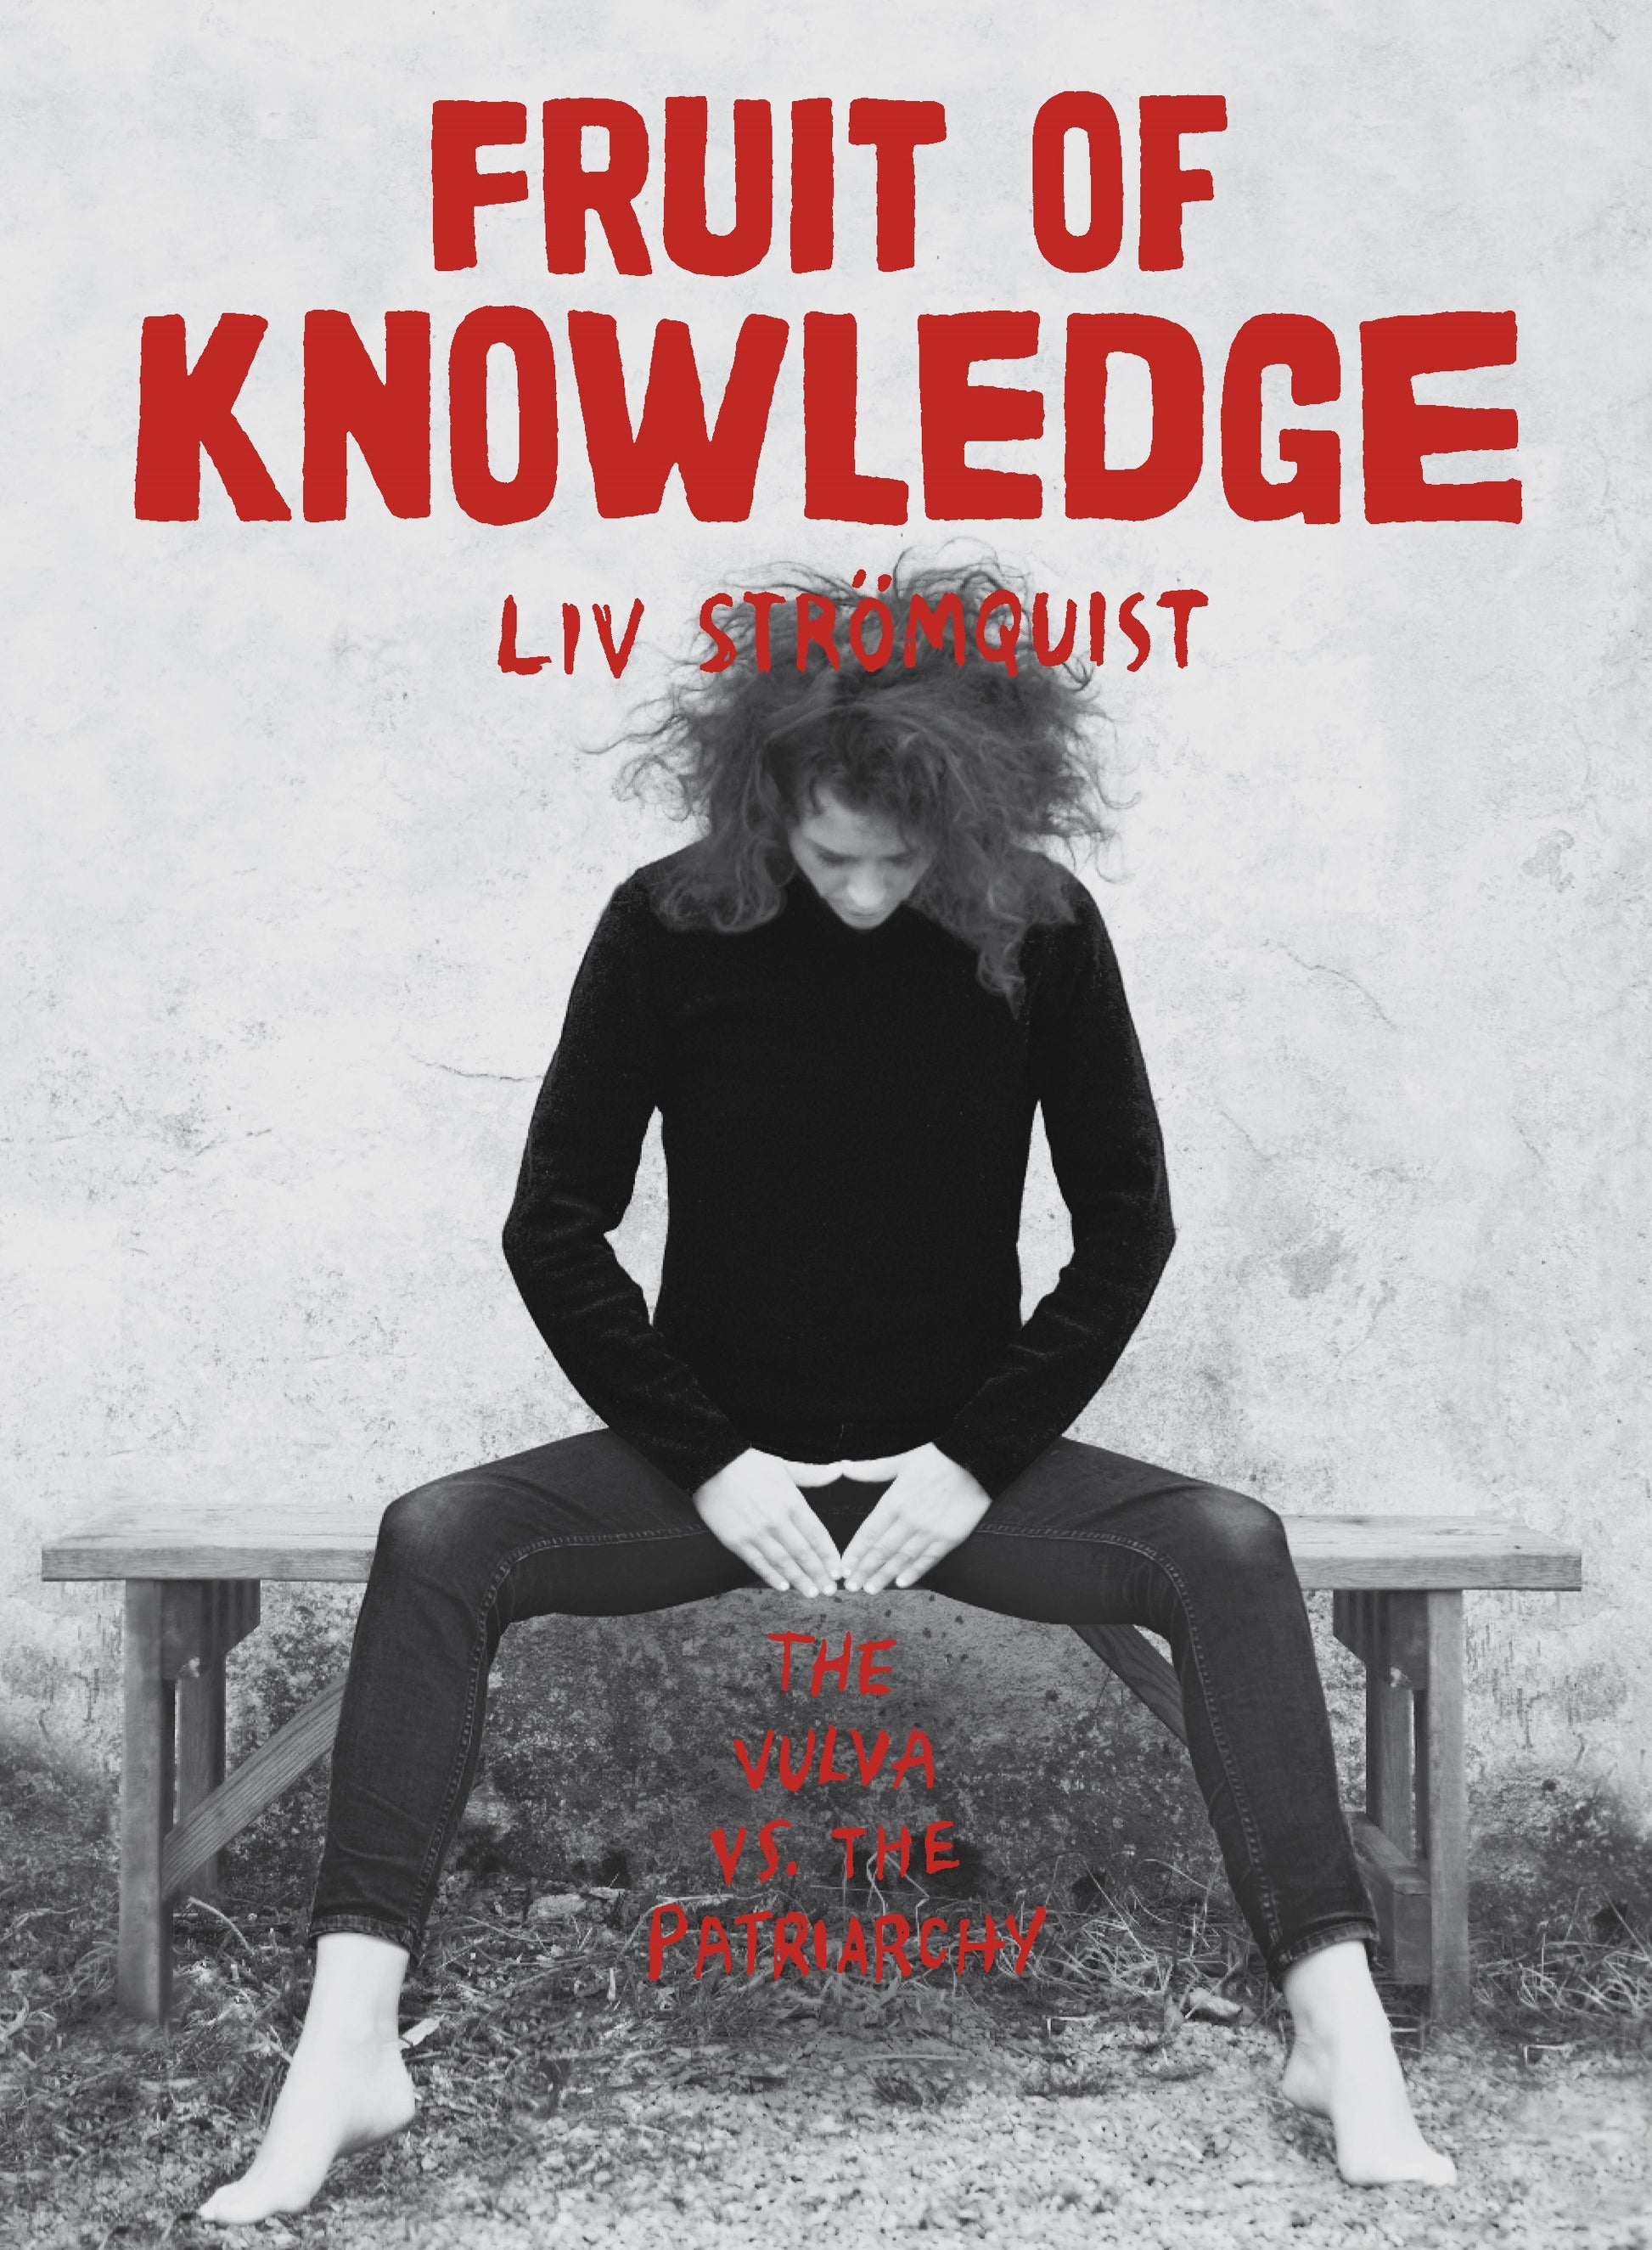 Fruit of Knowledge by Liv Strömquist